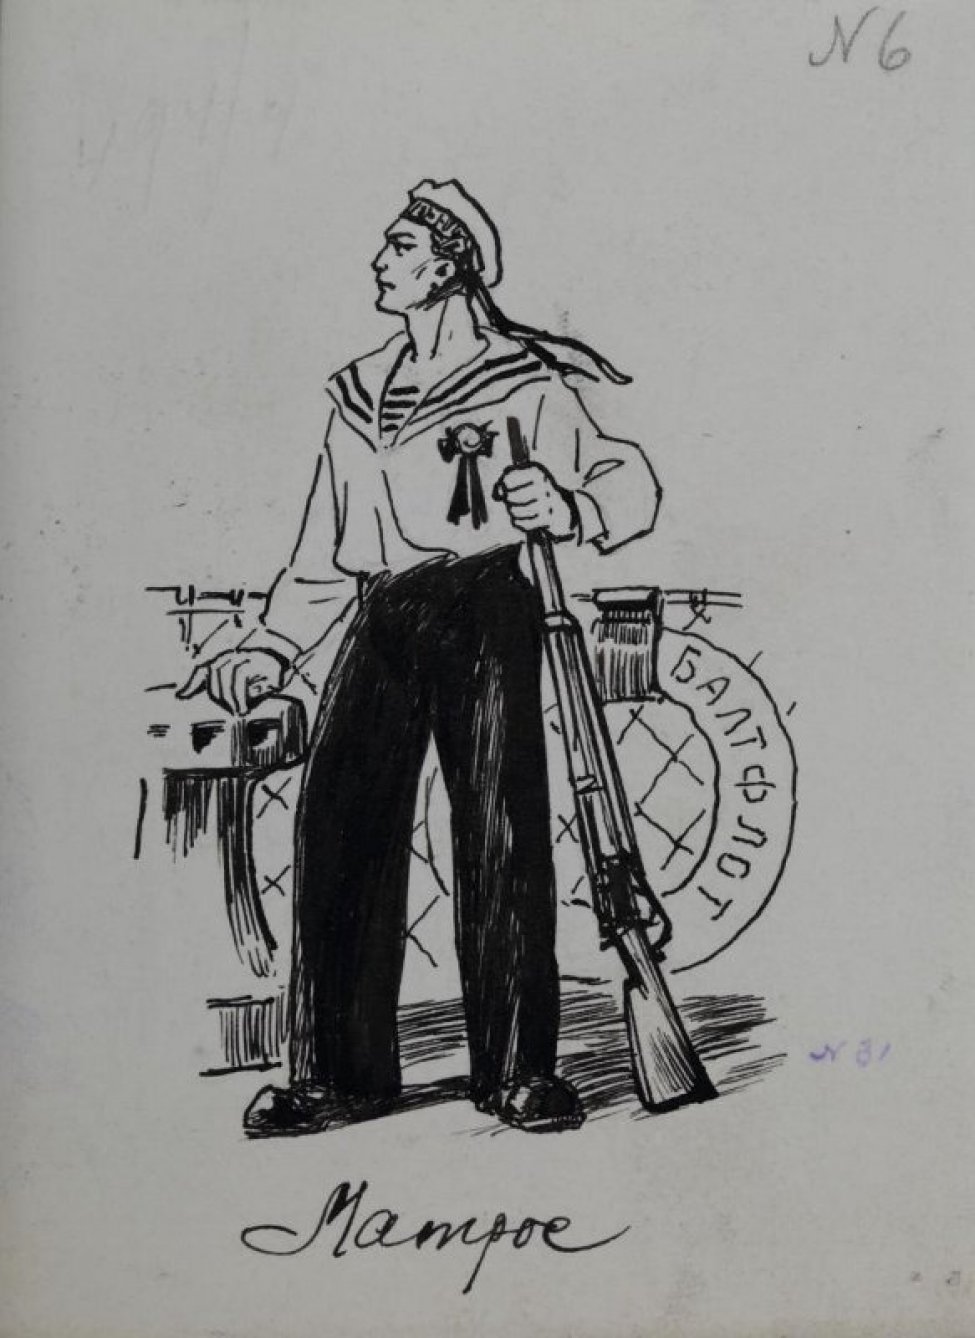 Изображен в левый профиль матрос с винтовкой, с орденом на груди, стоящий на палубе. За матросом перила палубы, справа висит спасательный круг, на котором написано "Балтфлот".